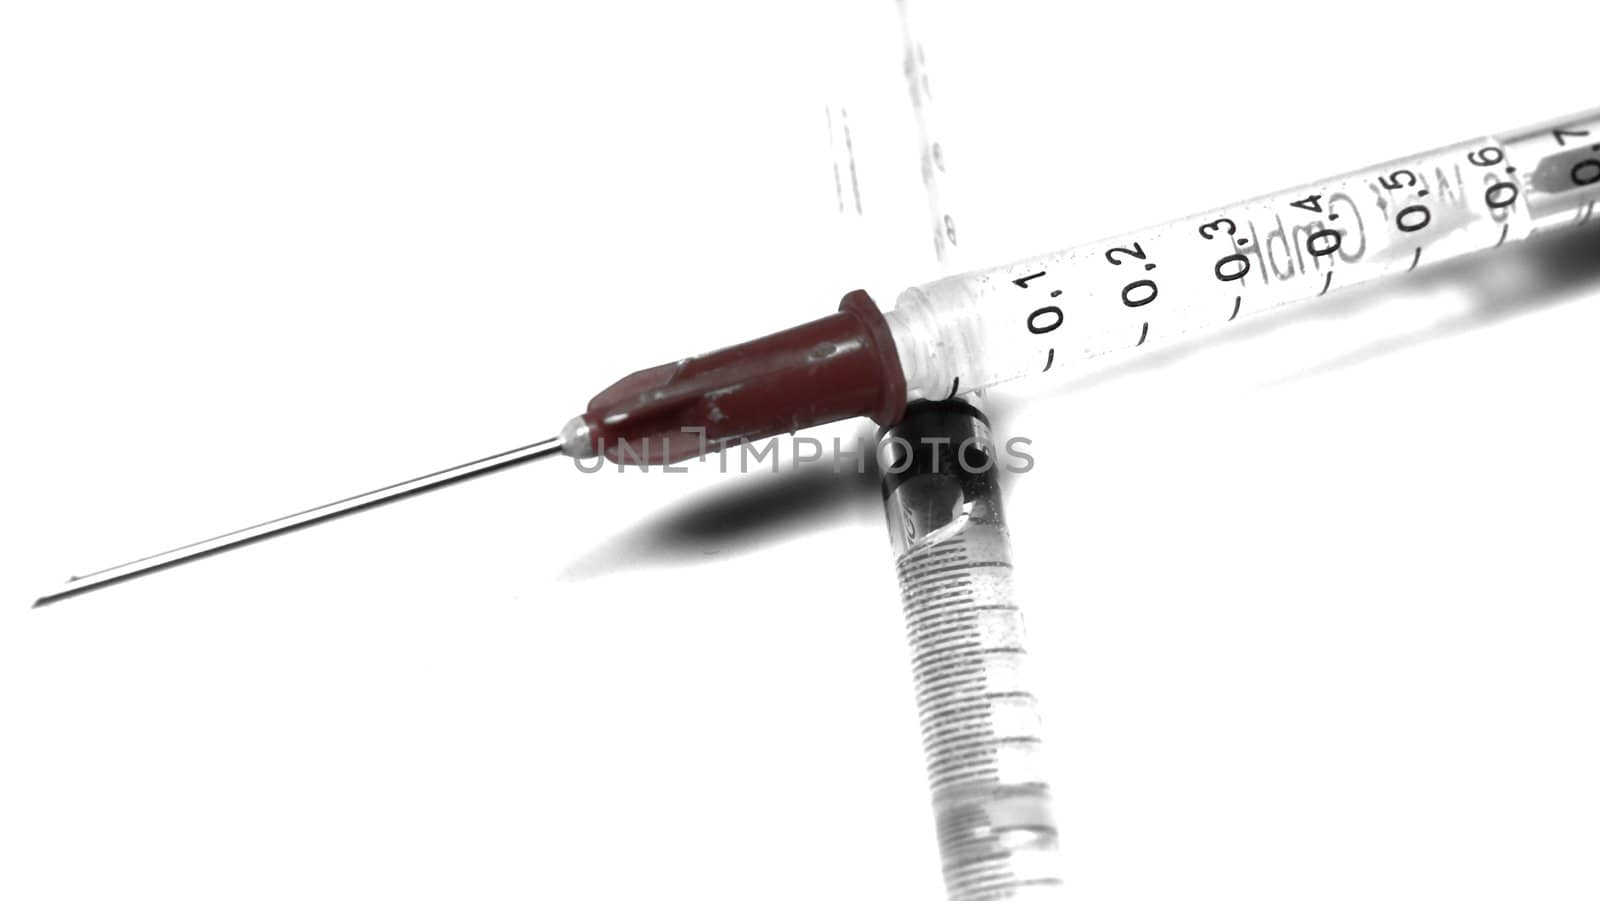 Syringes macro by FotoFrank